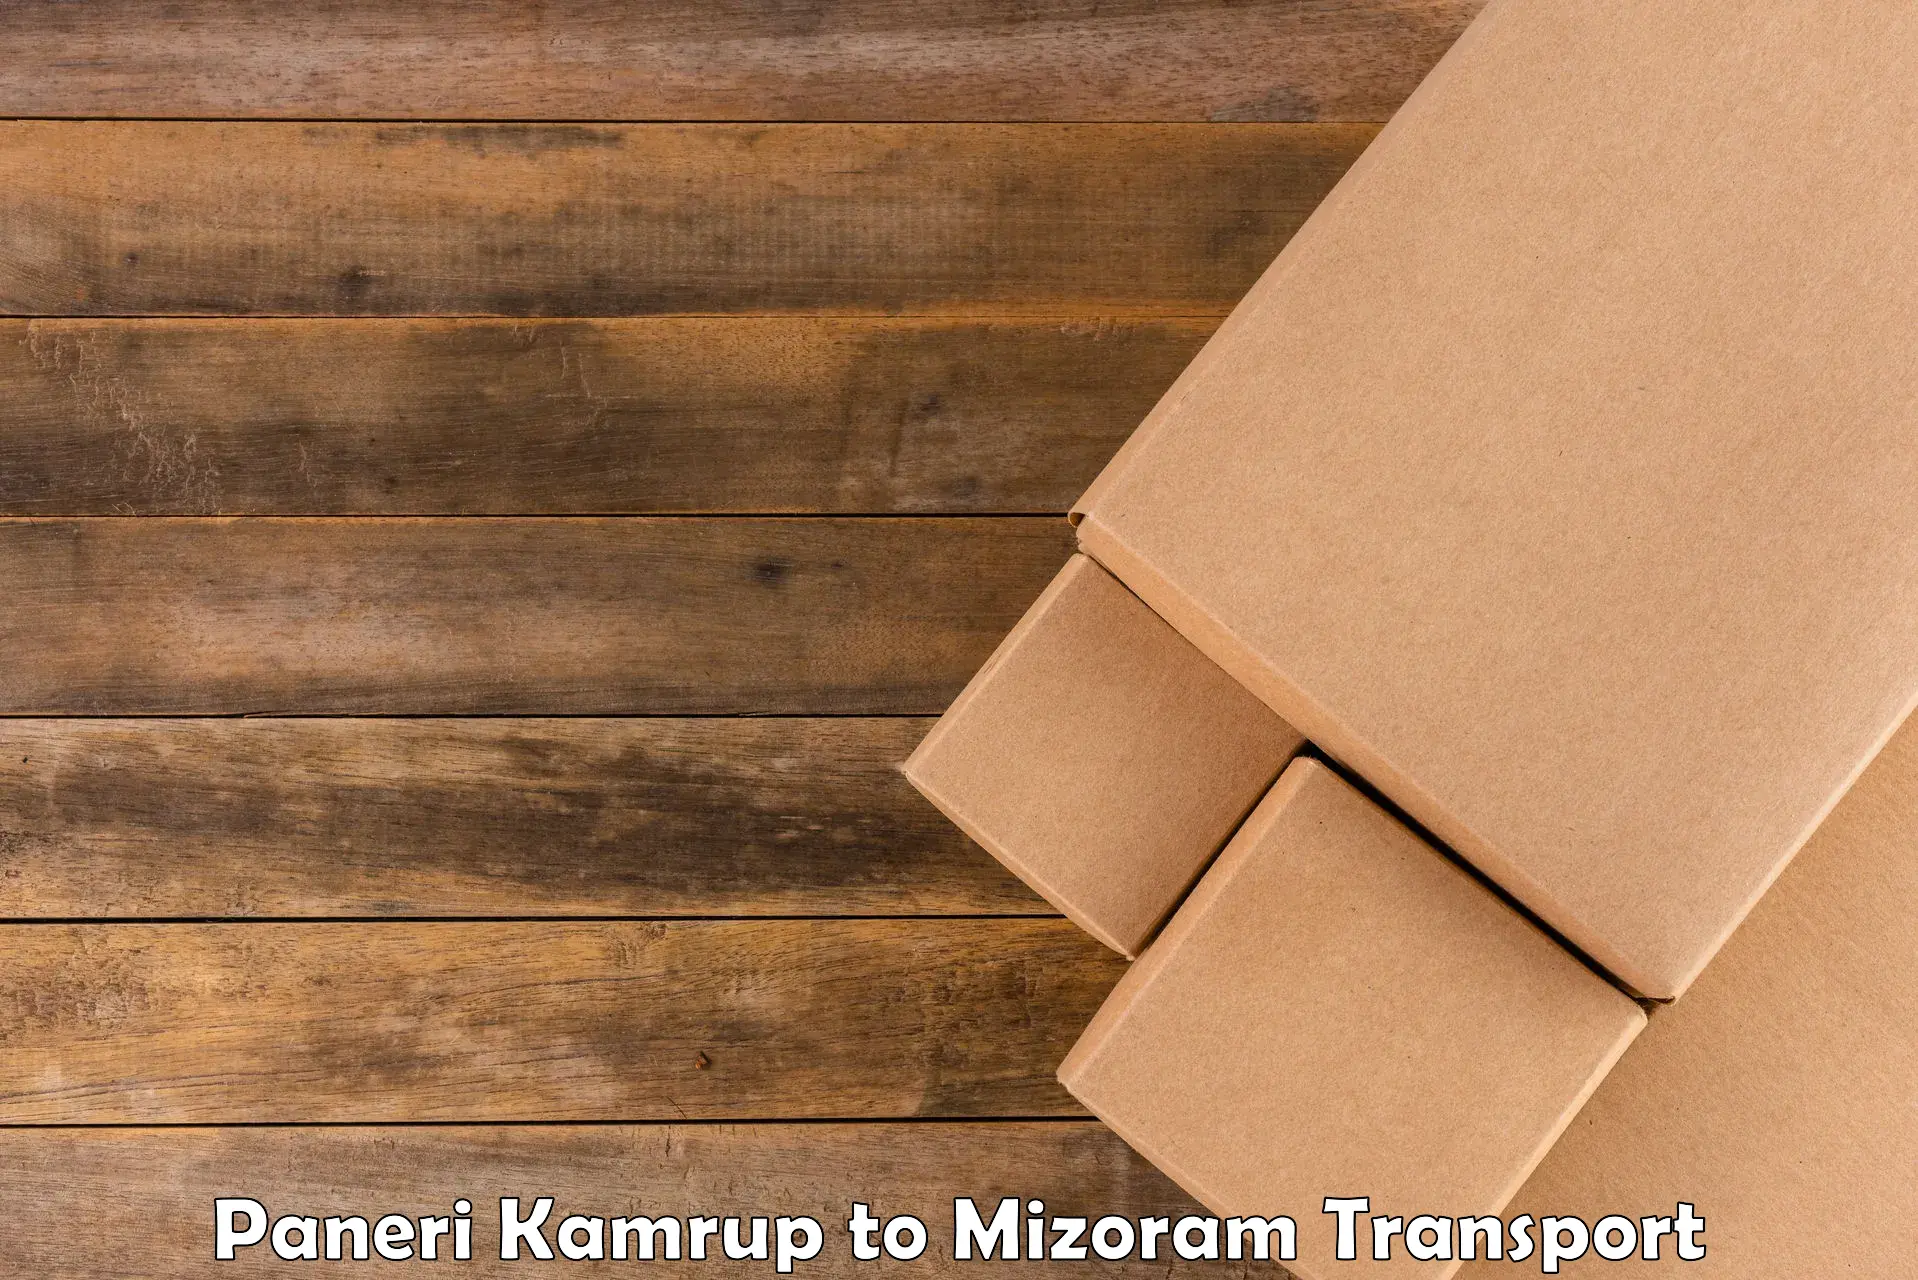 Express transport services Paneri Kamrup to Mizoram